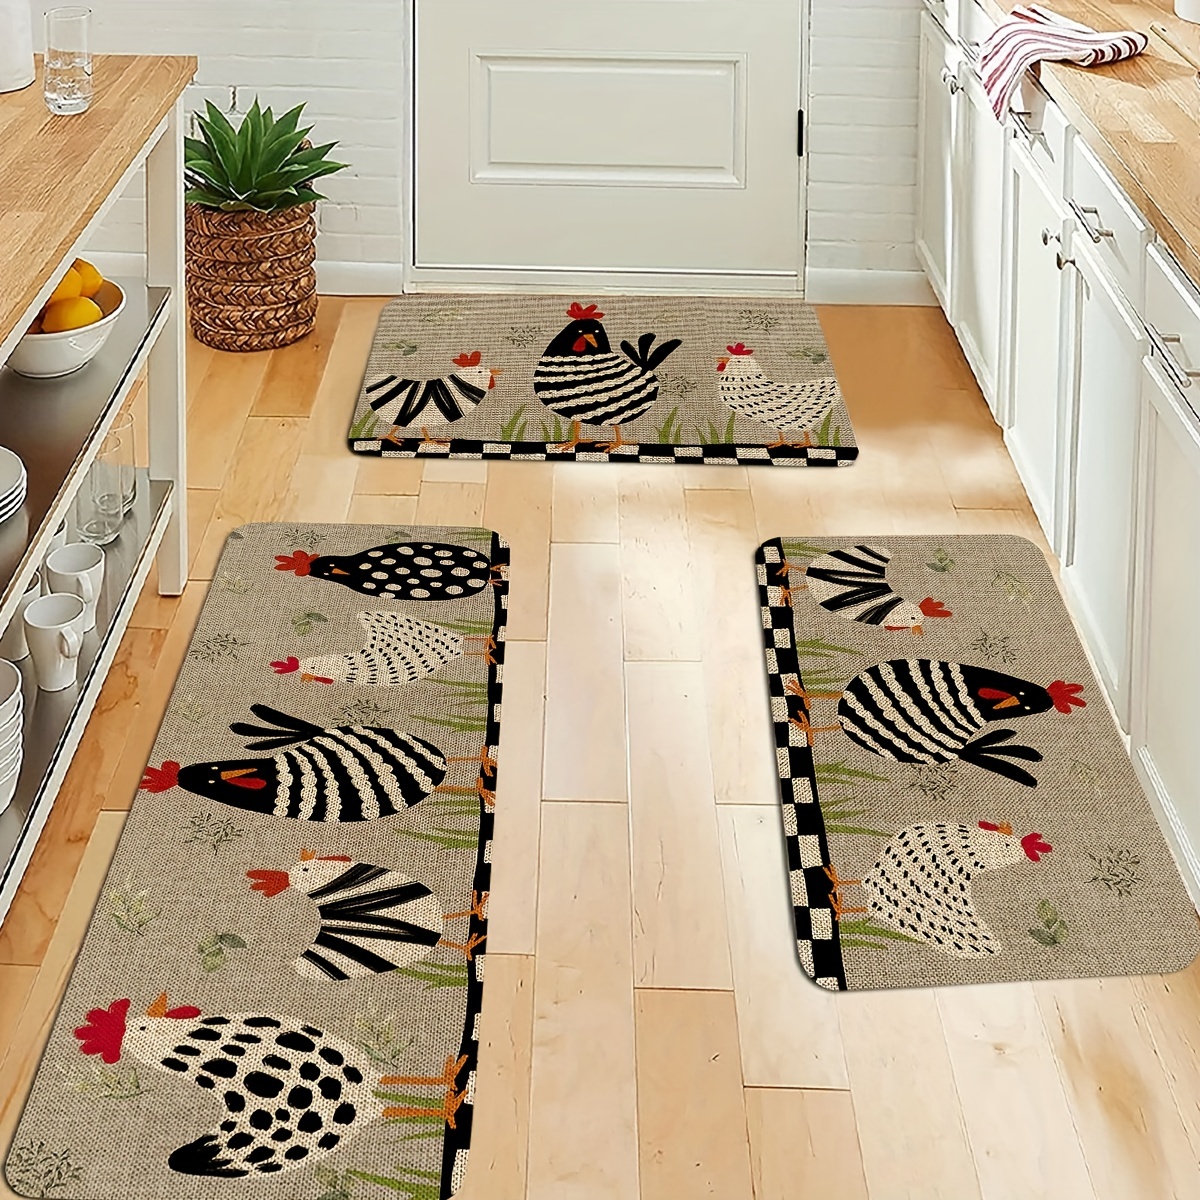 .com: Teamery Kitchen Mats for Floor, Animal Horse Desert